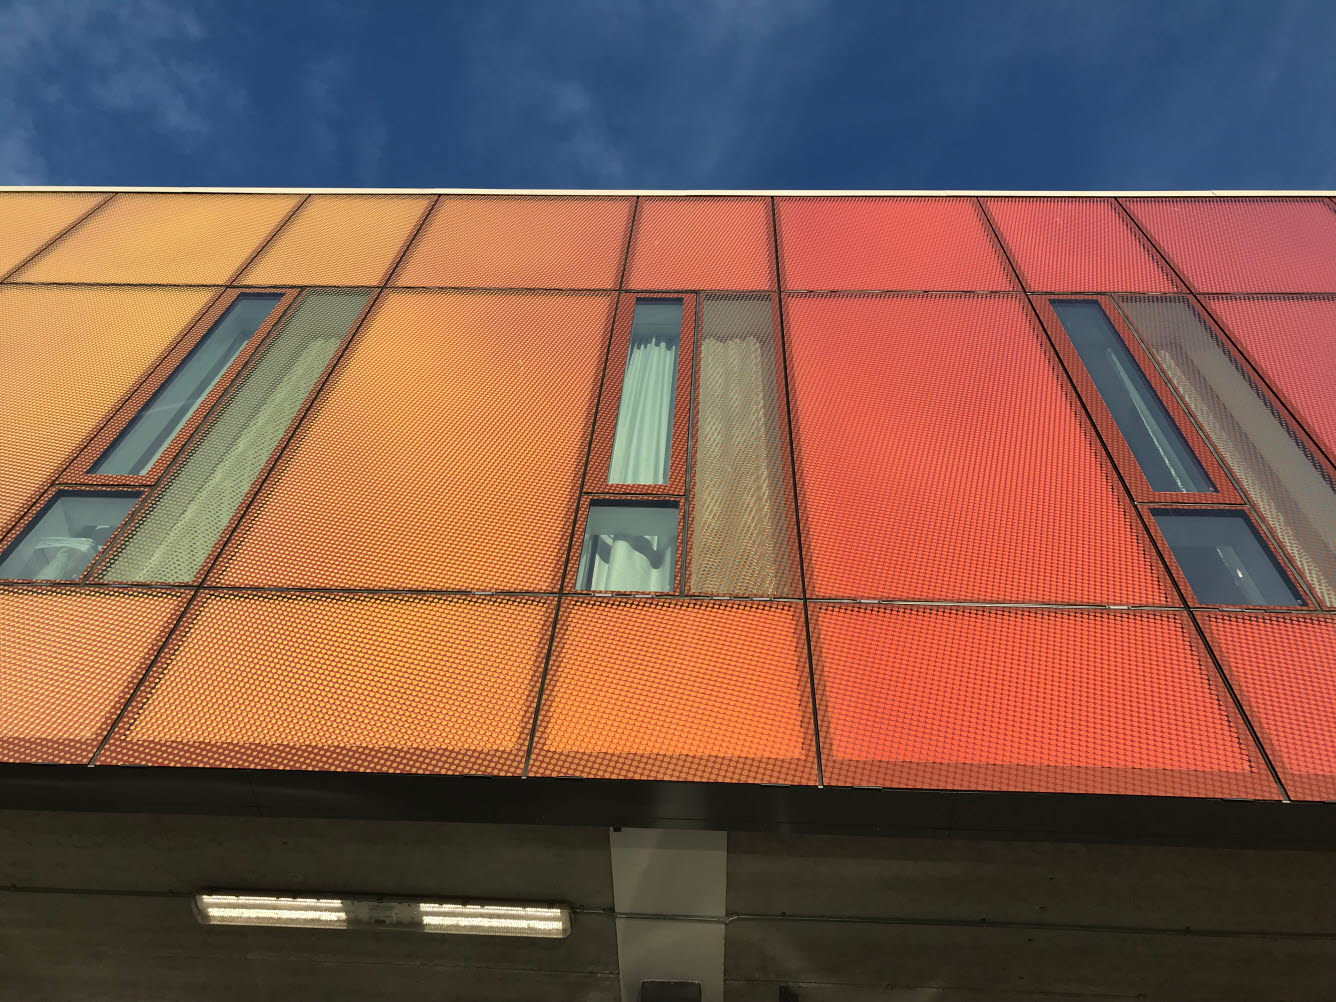 Fasad på byggnad som är tryckt med färgskalan orange till rött.